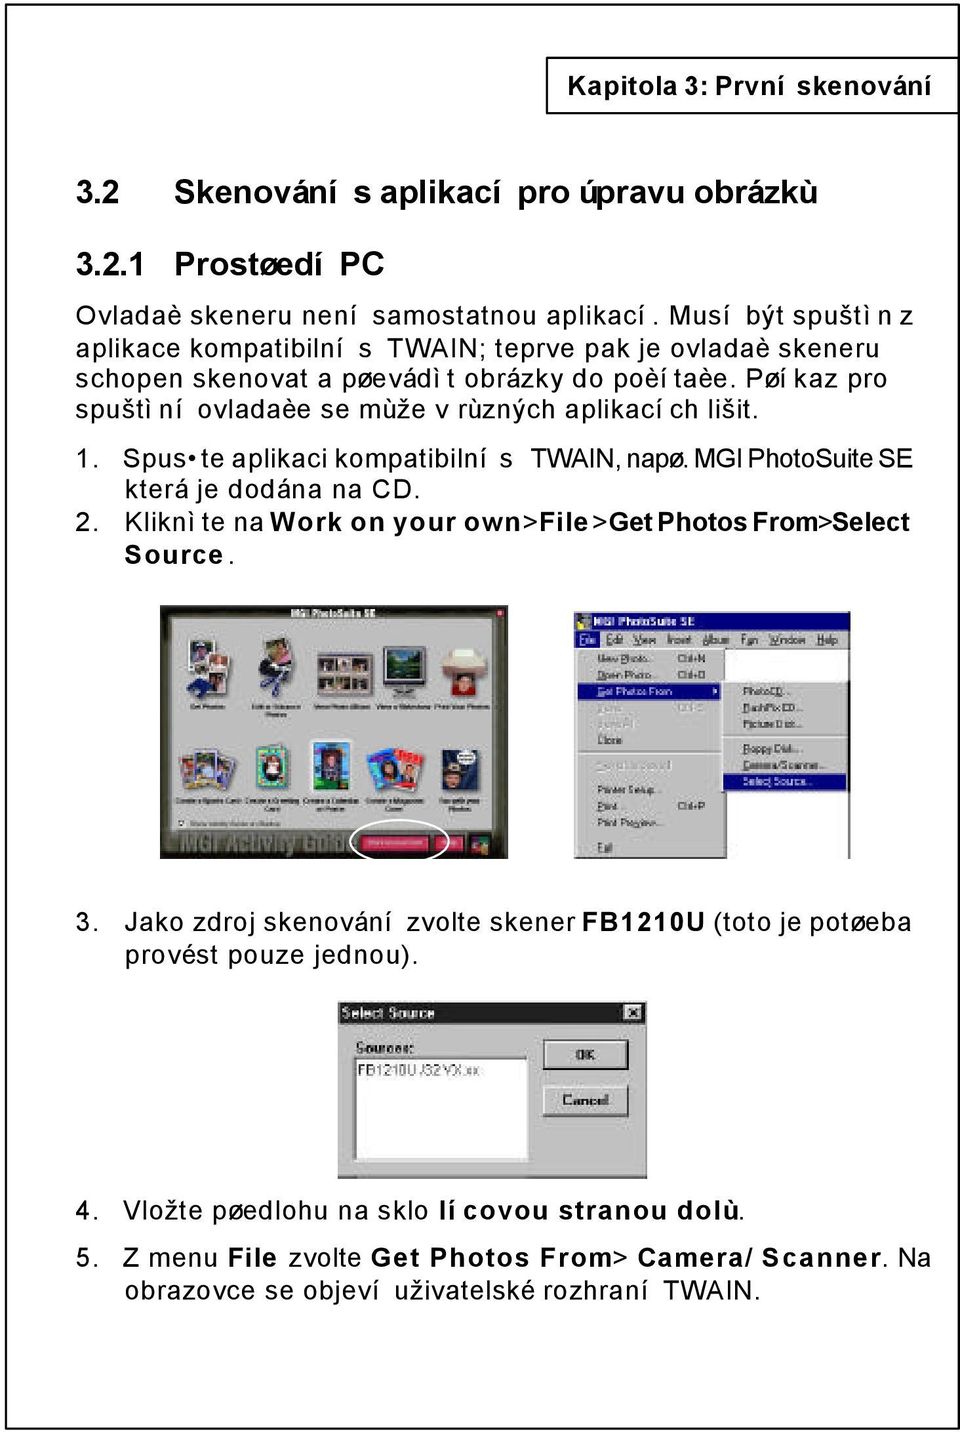 Pøíkaz pro spuštìní ovladaèe se mùže v rùzných aplikacích lišit. 1. Spus te aplikaci kompatibilní s TWAIN, napø. MGI PhotoSuite SE která je dodána na CD. 2.